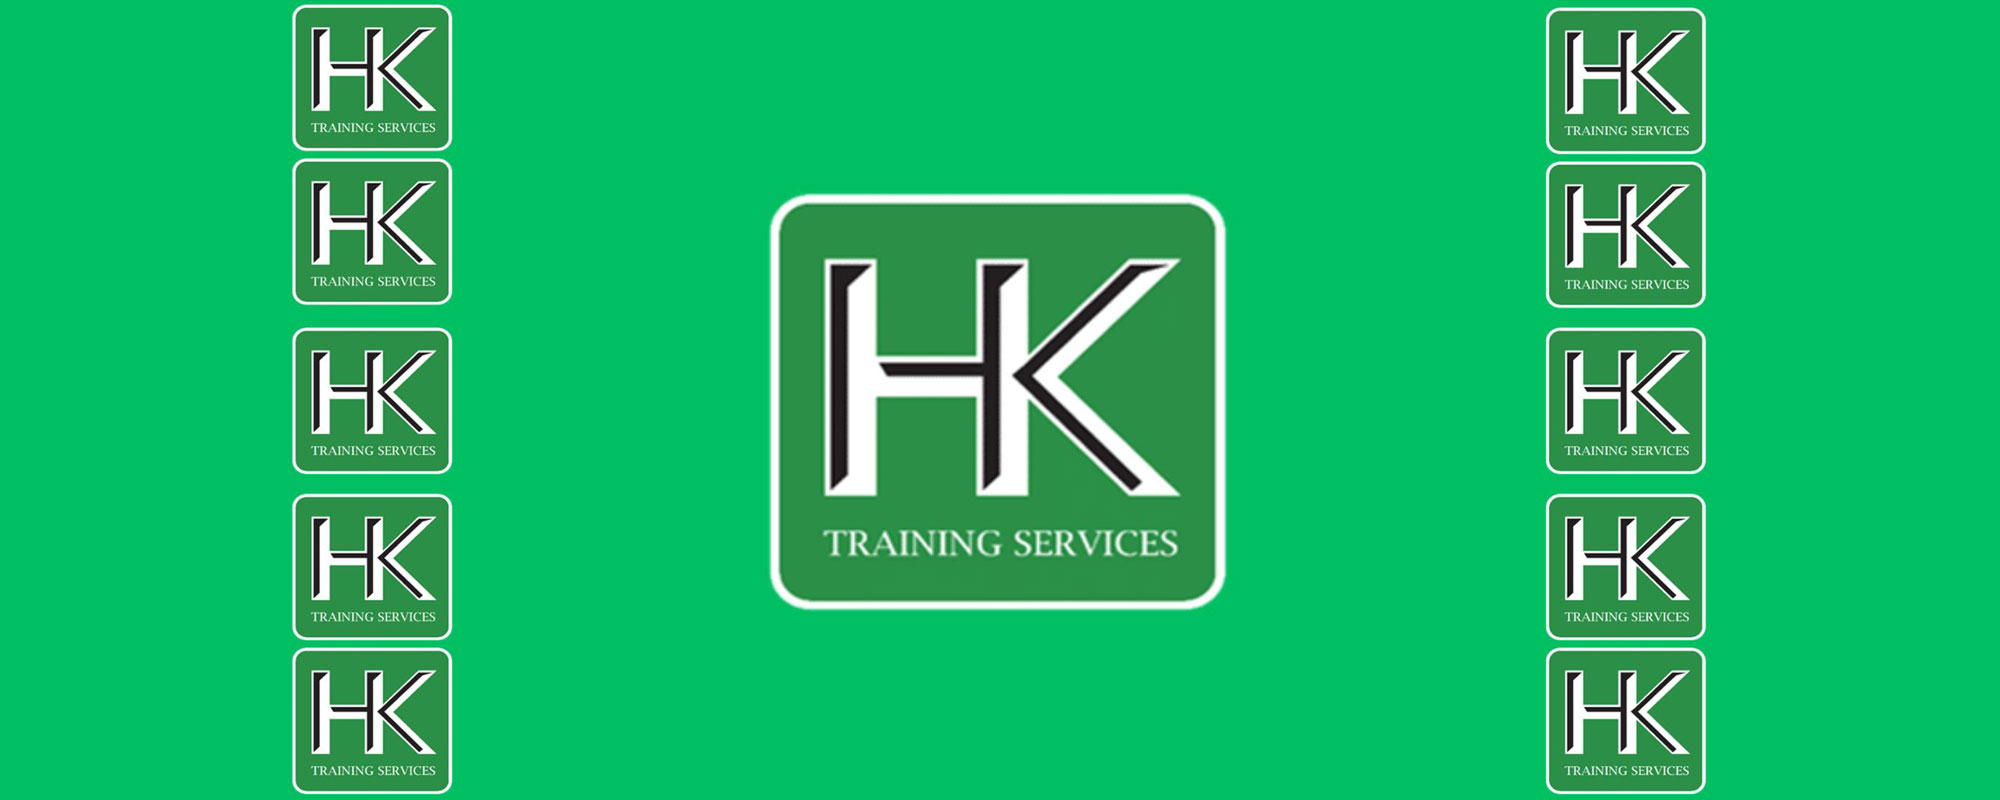 HK logos